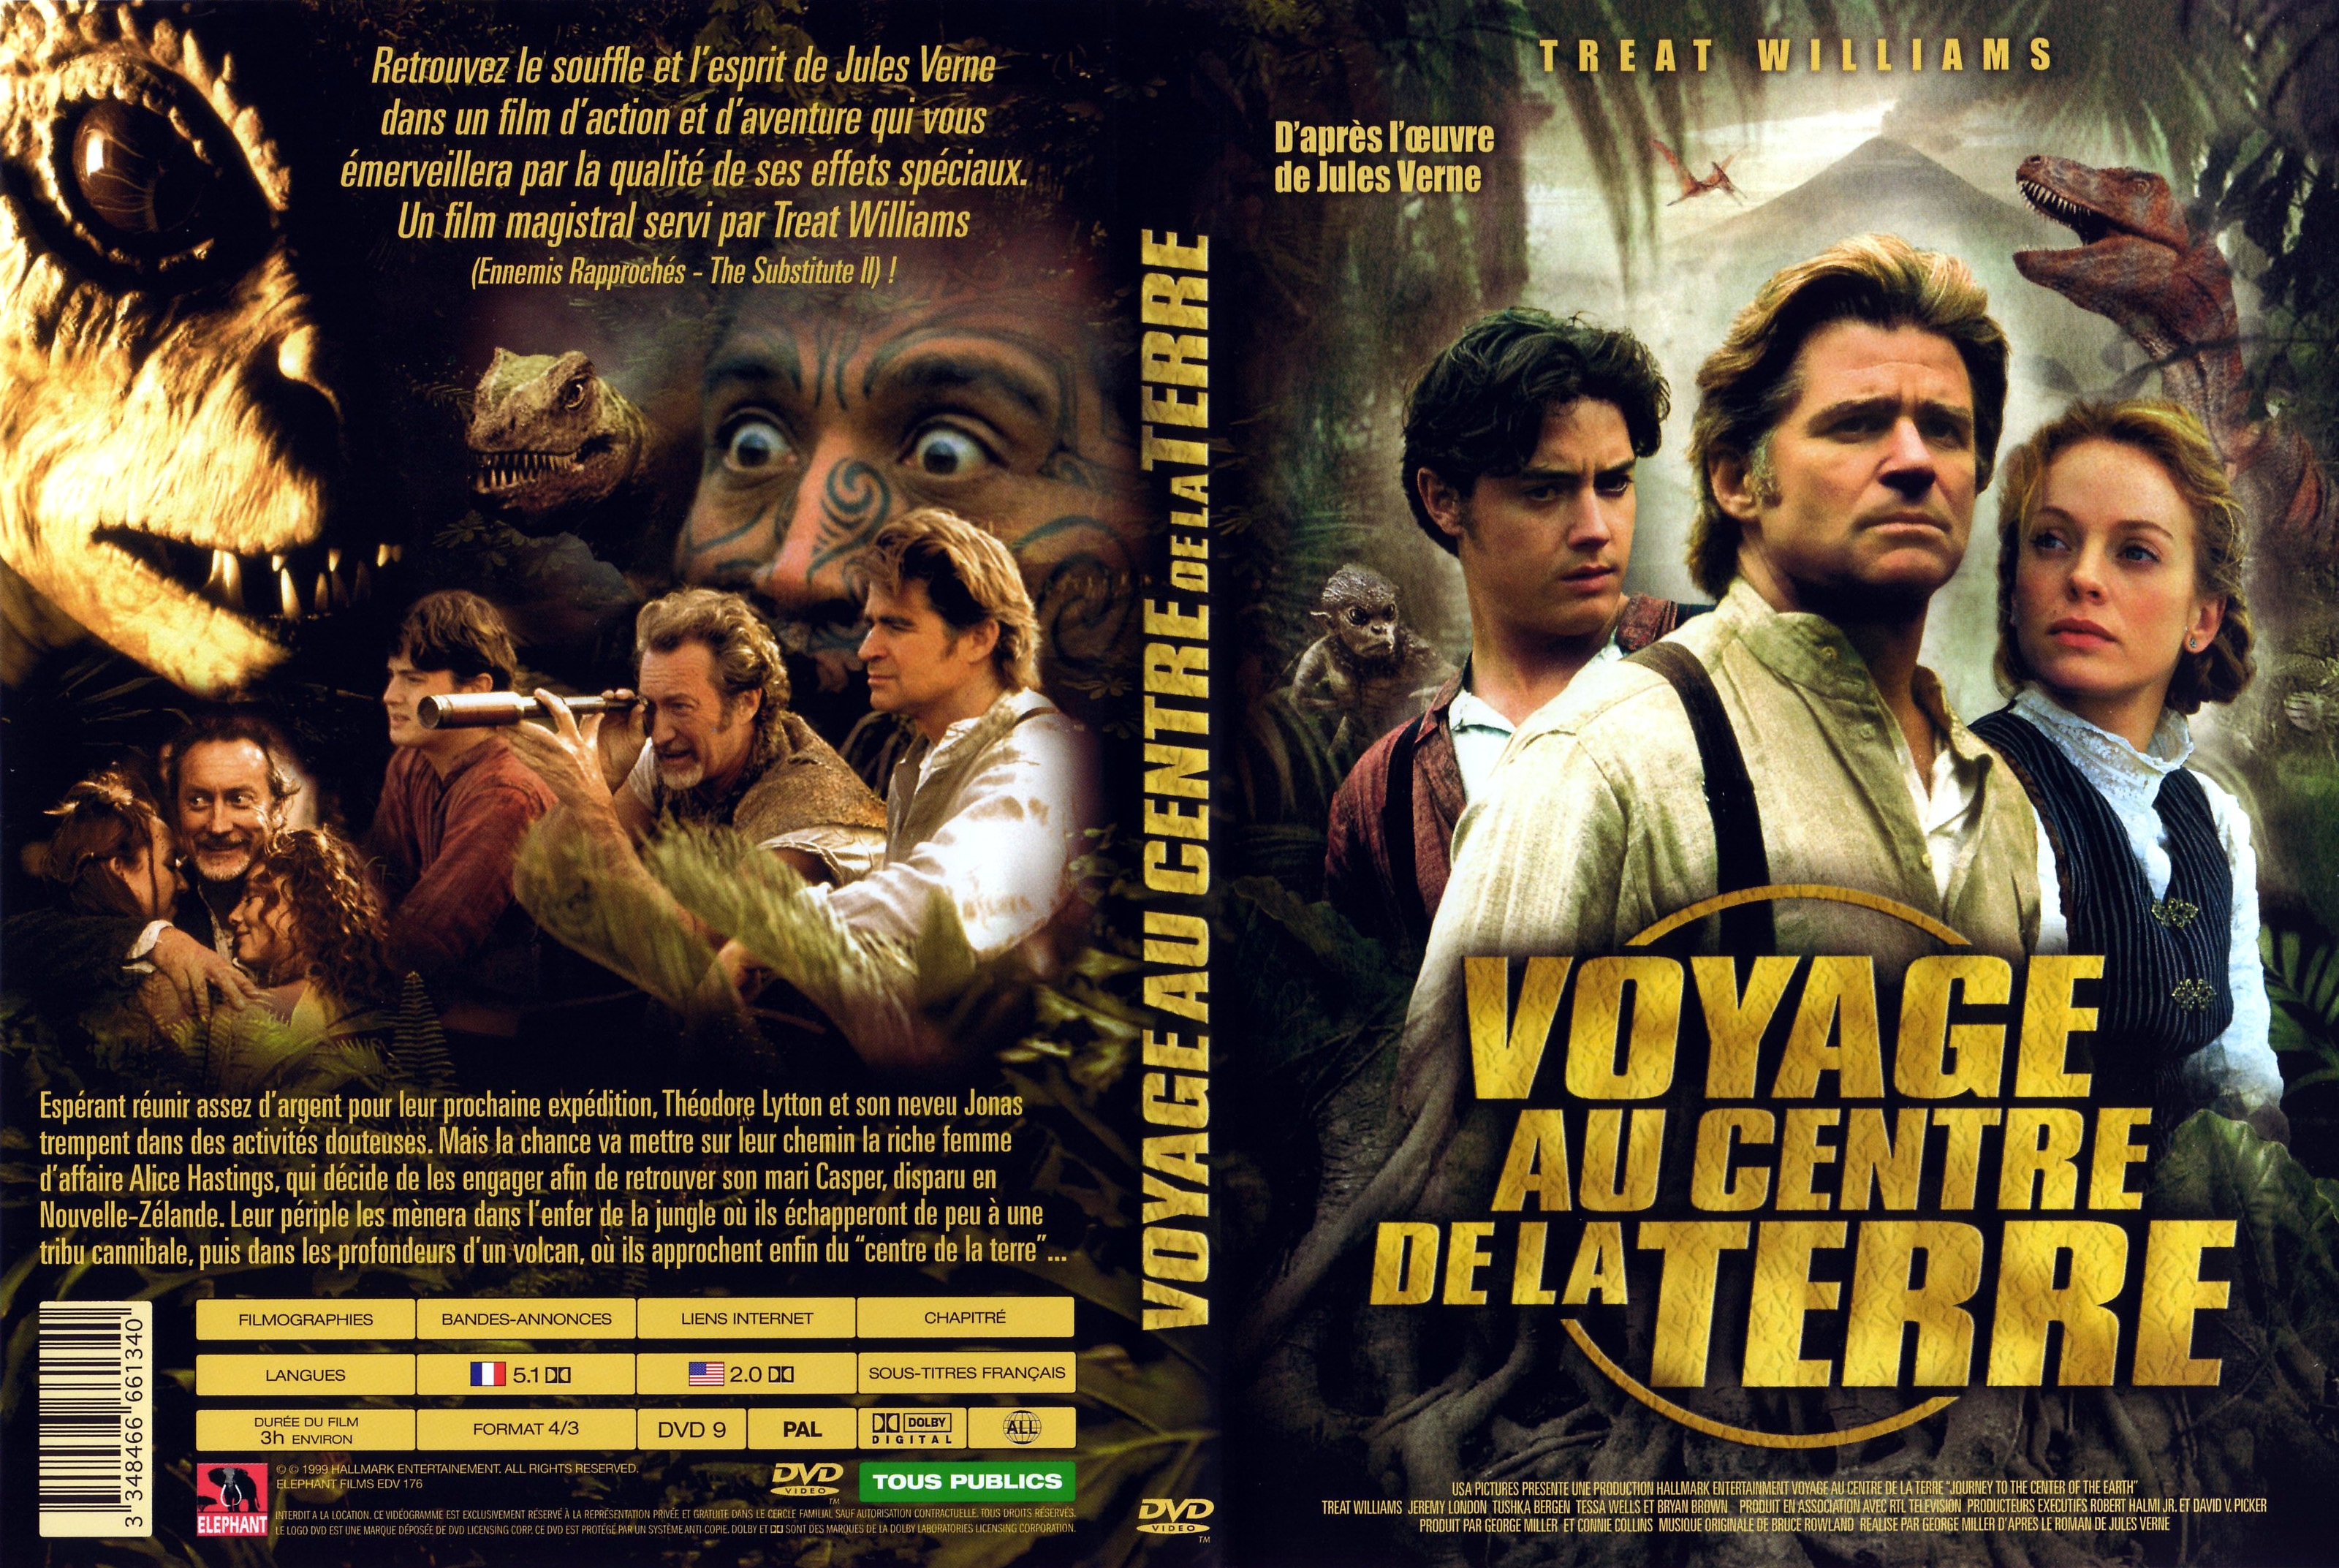 Jaquette DVD Voyage au centre de la terre (1999) v2